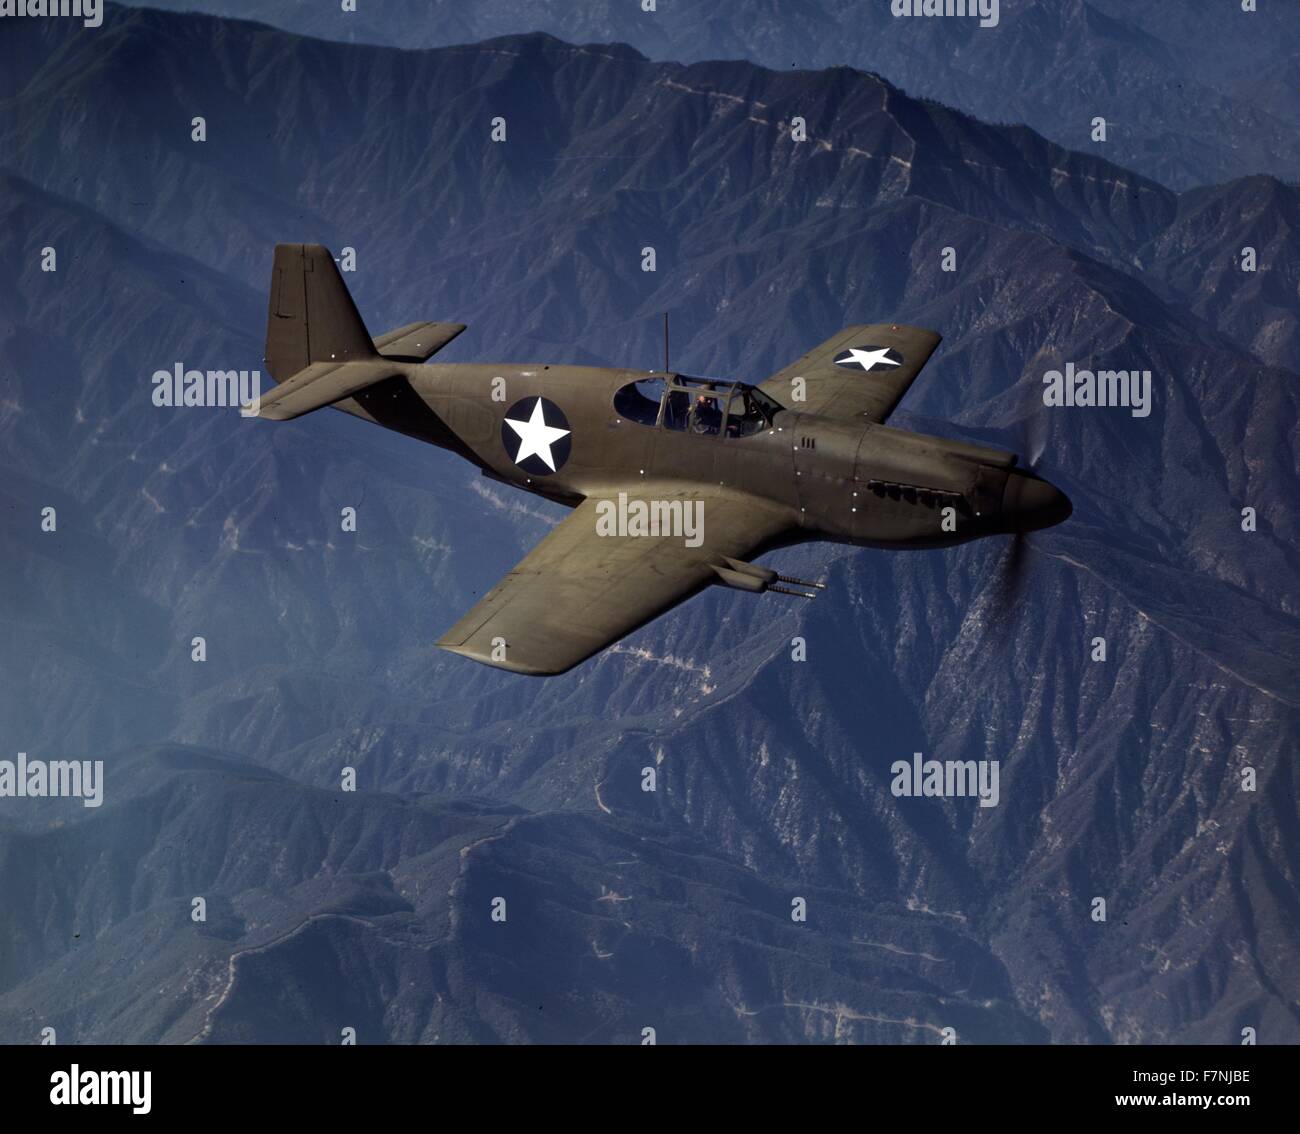 Zweiter Weltkrieg: P-51 "Mustang" Kämpfer im Flug, Inglewoof, Kalifornien Die "Mustang", gebaut von North American Aviation, Incorporated, verwendet von der Royal Air Force Großbritanniens 1942 Stockfoto